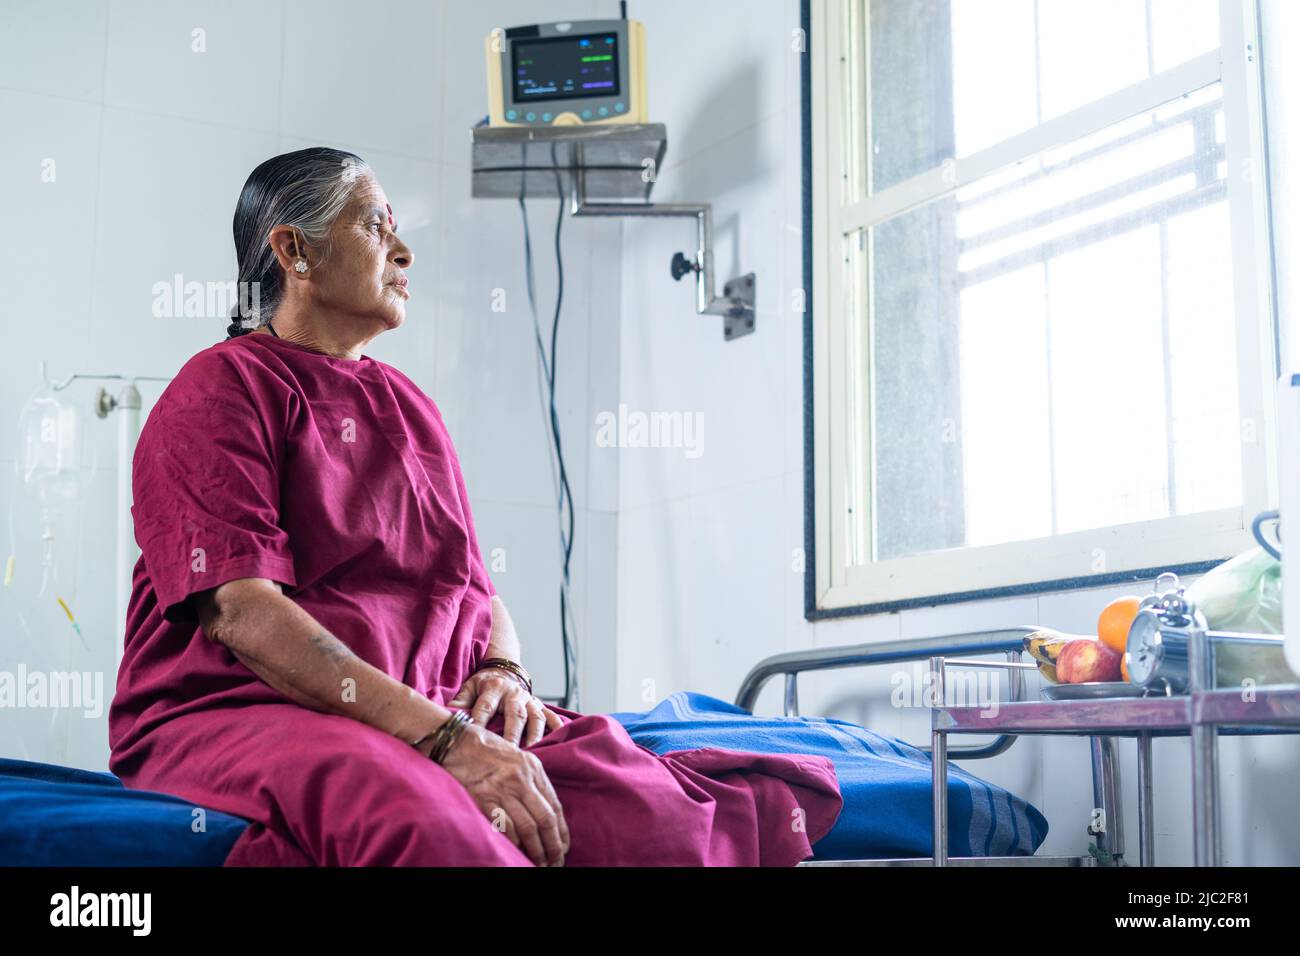 Handgeführte Aufnahme von älteren kranken Frauen, die vor der Operation auf dem Bett im Krankenhaus saßen und tiefes Denken vorbrachten - Konzept der Krankheit, der Sorge und der Medicare. Stockfoto